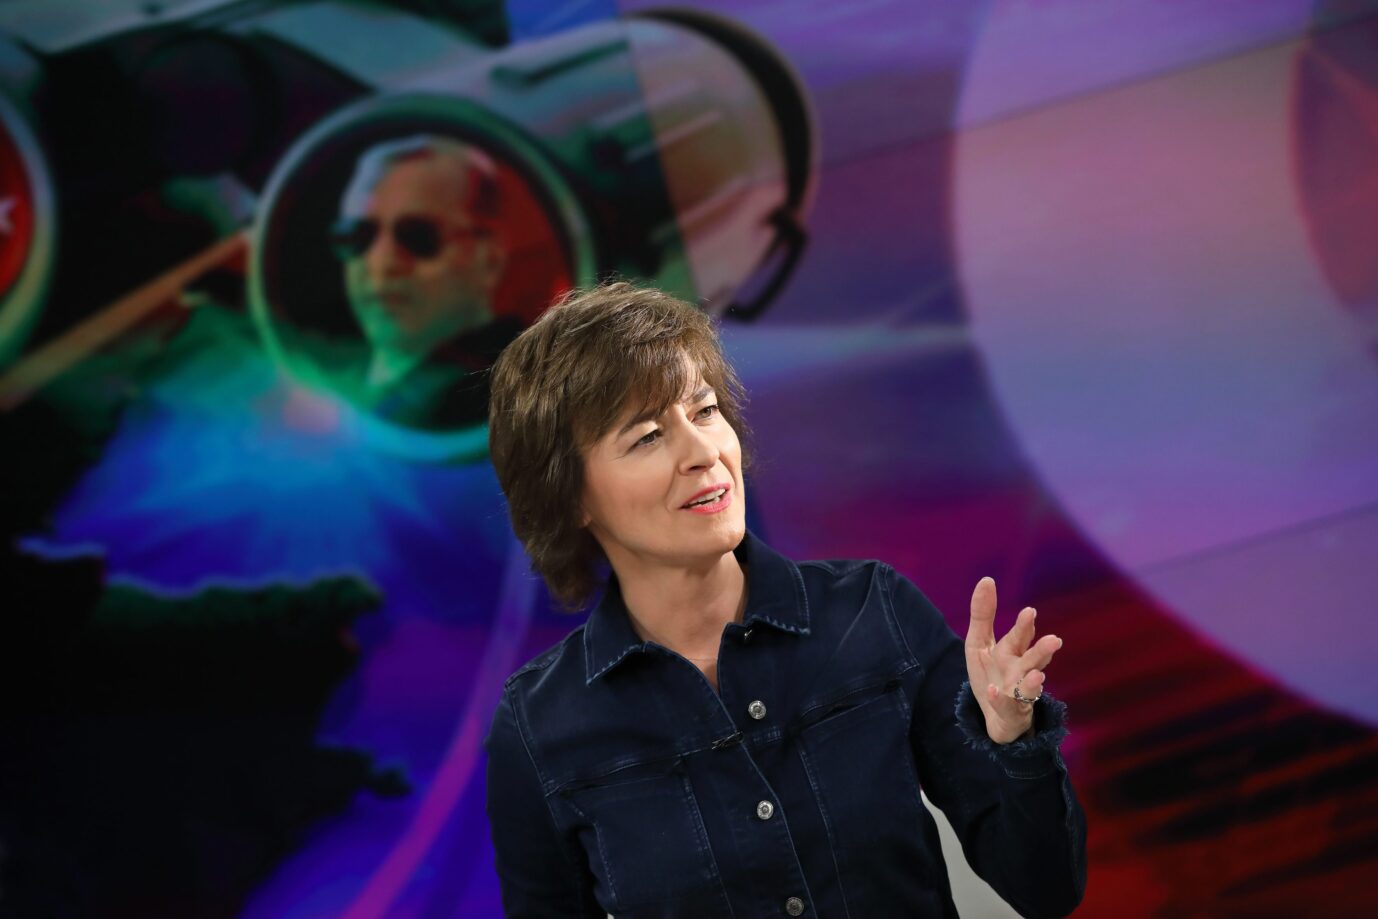 Auf dem Foto befindet sich Maybrit Illner während ihrer Talksendung im ZDF. (Themenbild/Symbolbild)